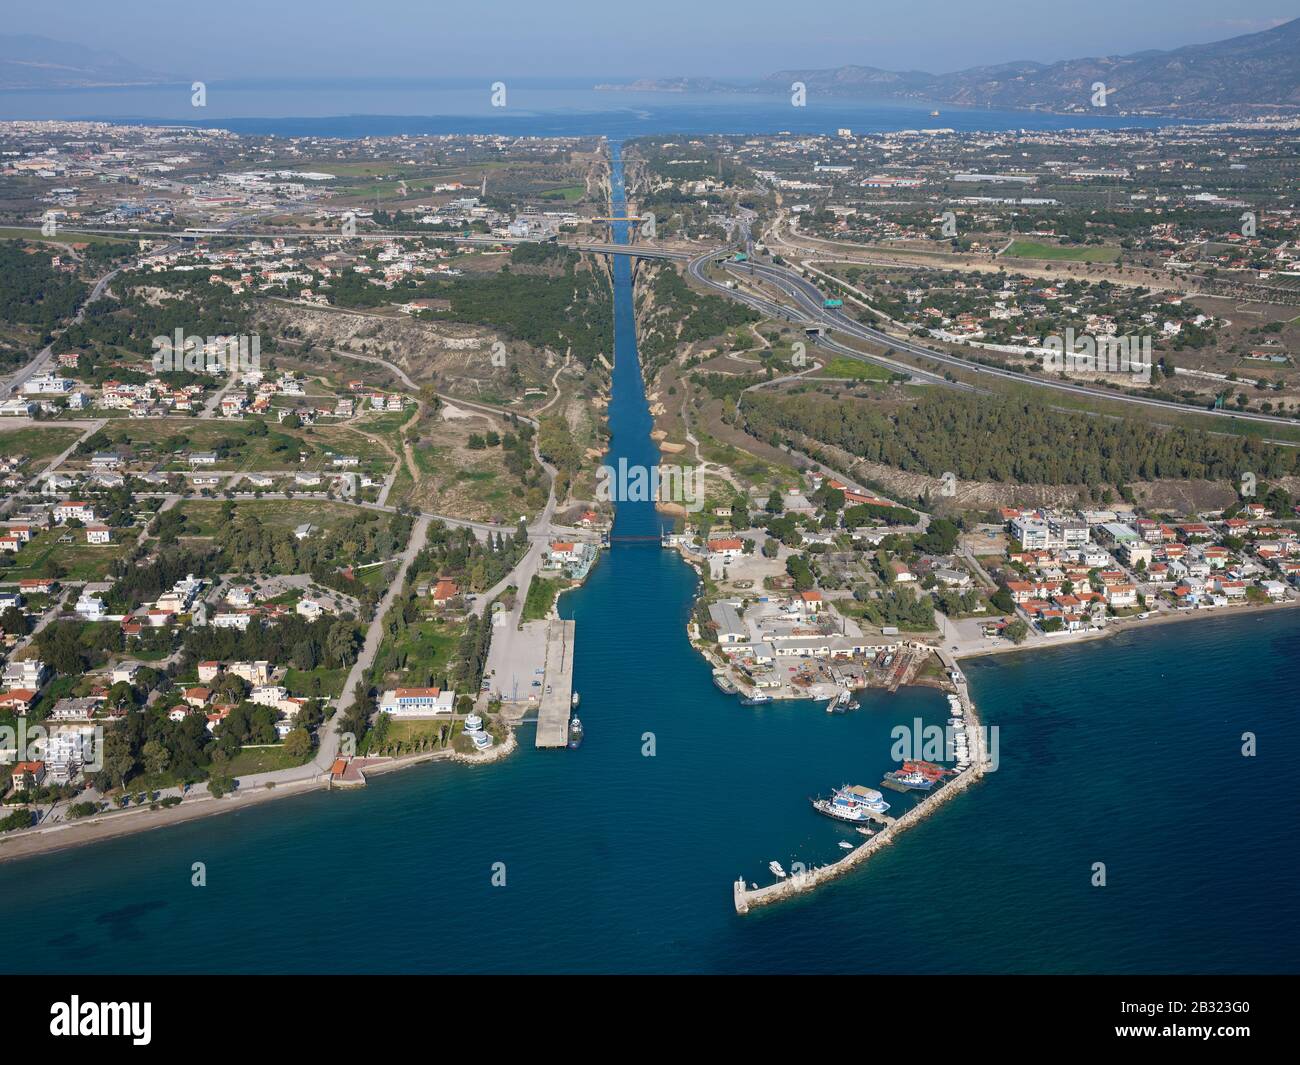 VISTA AEREA. Canale di Corinto lungo 6,4 km che collega il Golfo di Corinto in lontananza al Mar Egeo in primo piano. Istmo di Corinto, Grecia. Foto Stock